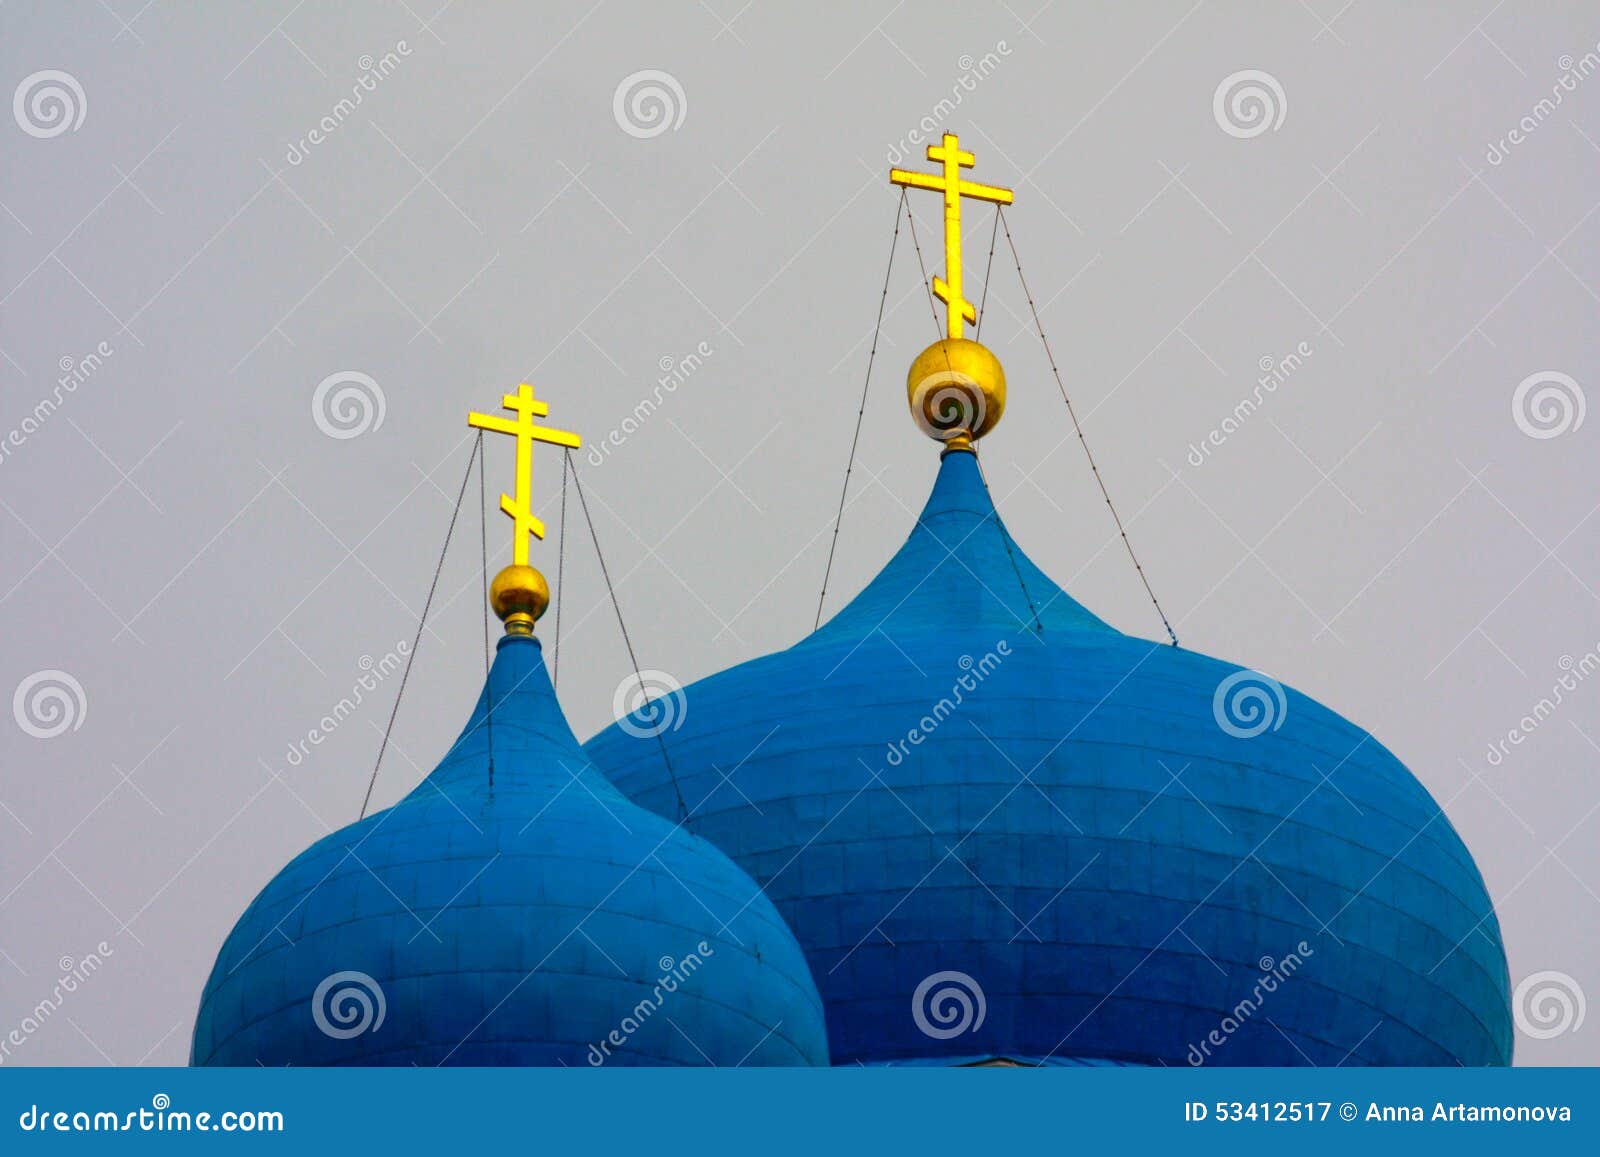 Winter Schöne orthodoxe Kirchen in Russland, mit hellen blauen Hauben. Ein altes religiöses Gebäude in der weißen Stadt Bogolyubov